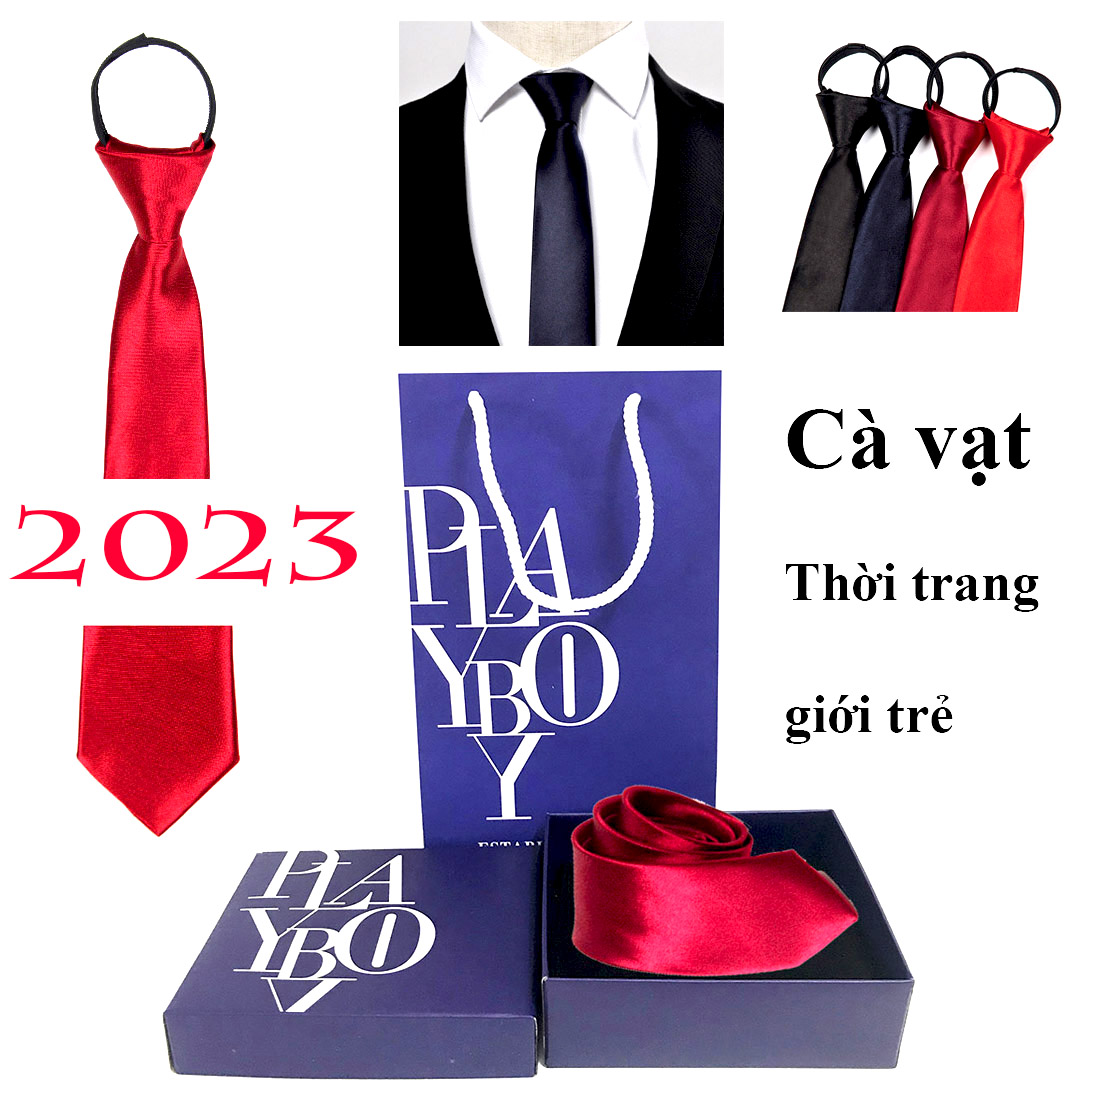 DESIGN 2023 - Caravat Cao Cấp - Tinh tế và Sang trọng -hàng hiệu cao cấp đẹp cho nam -Loại 1 Full túi hộp y hình